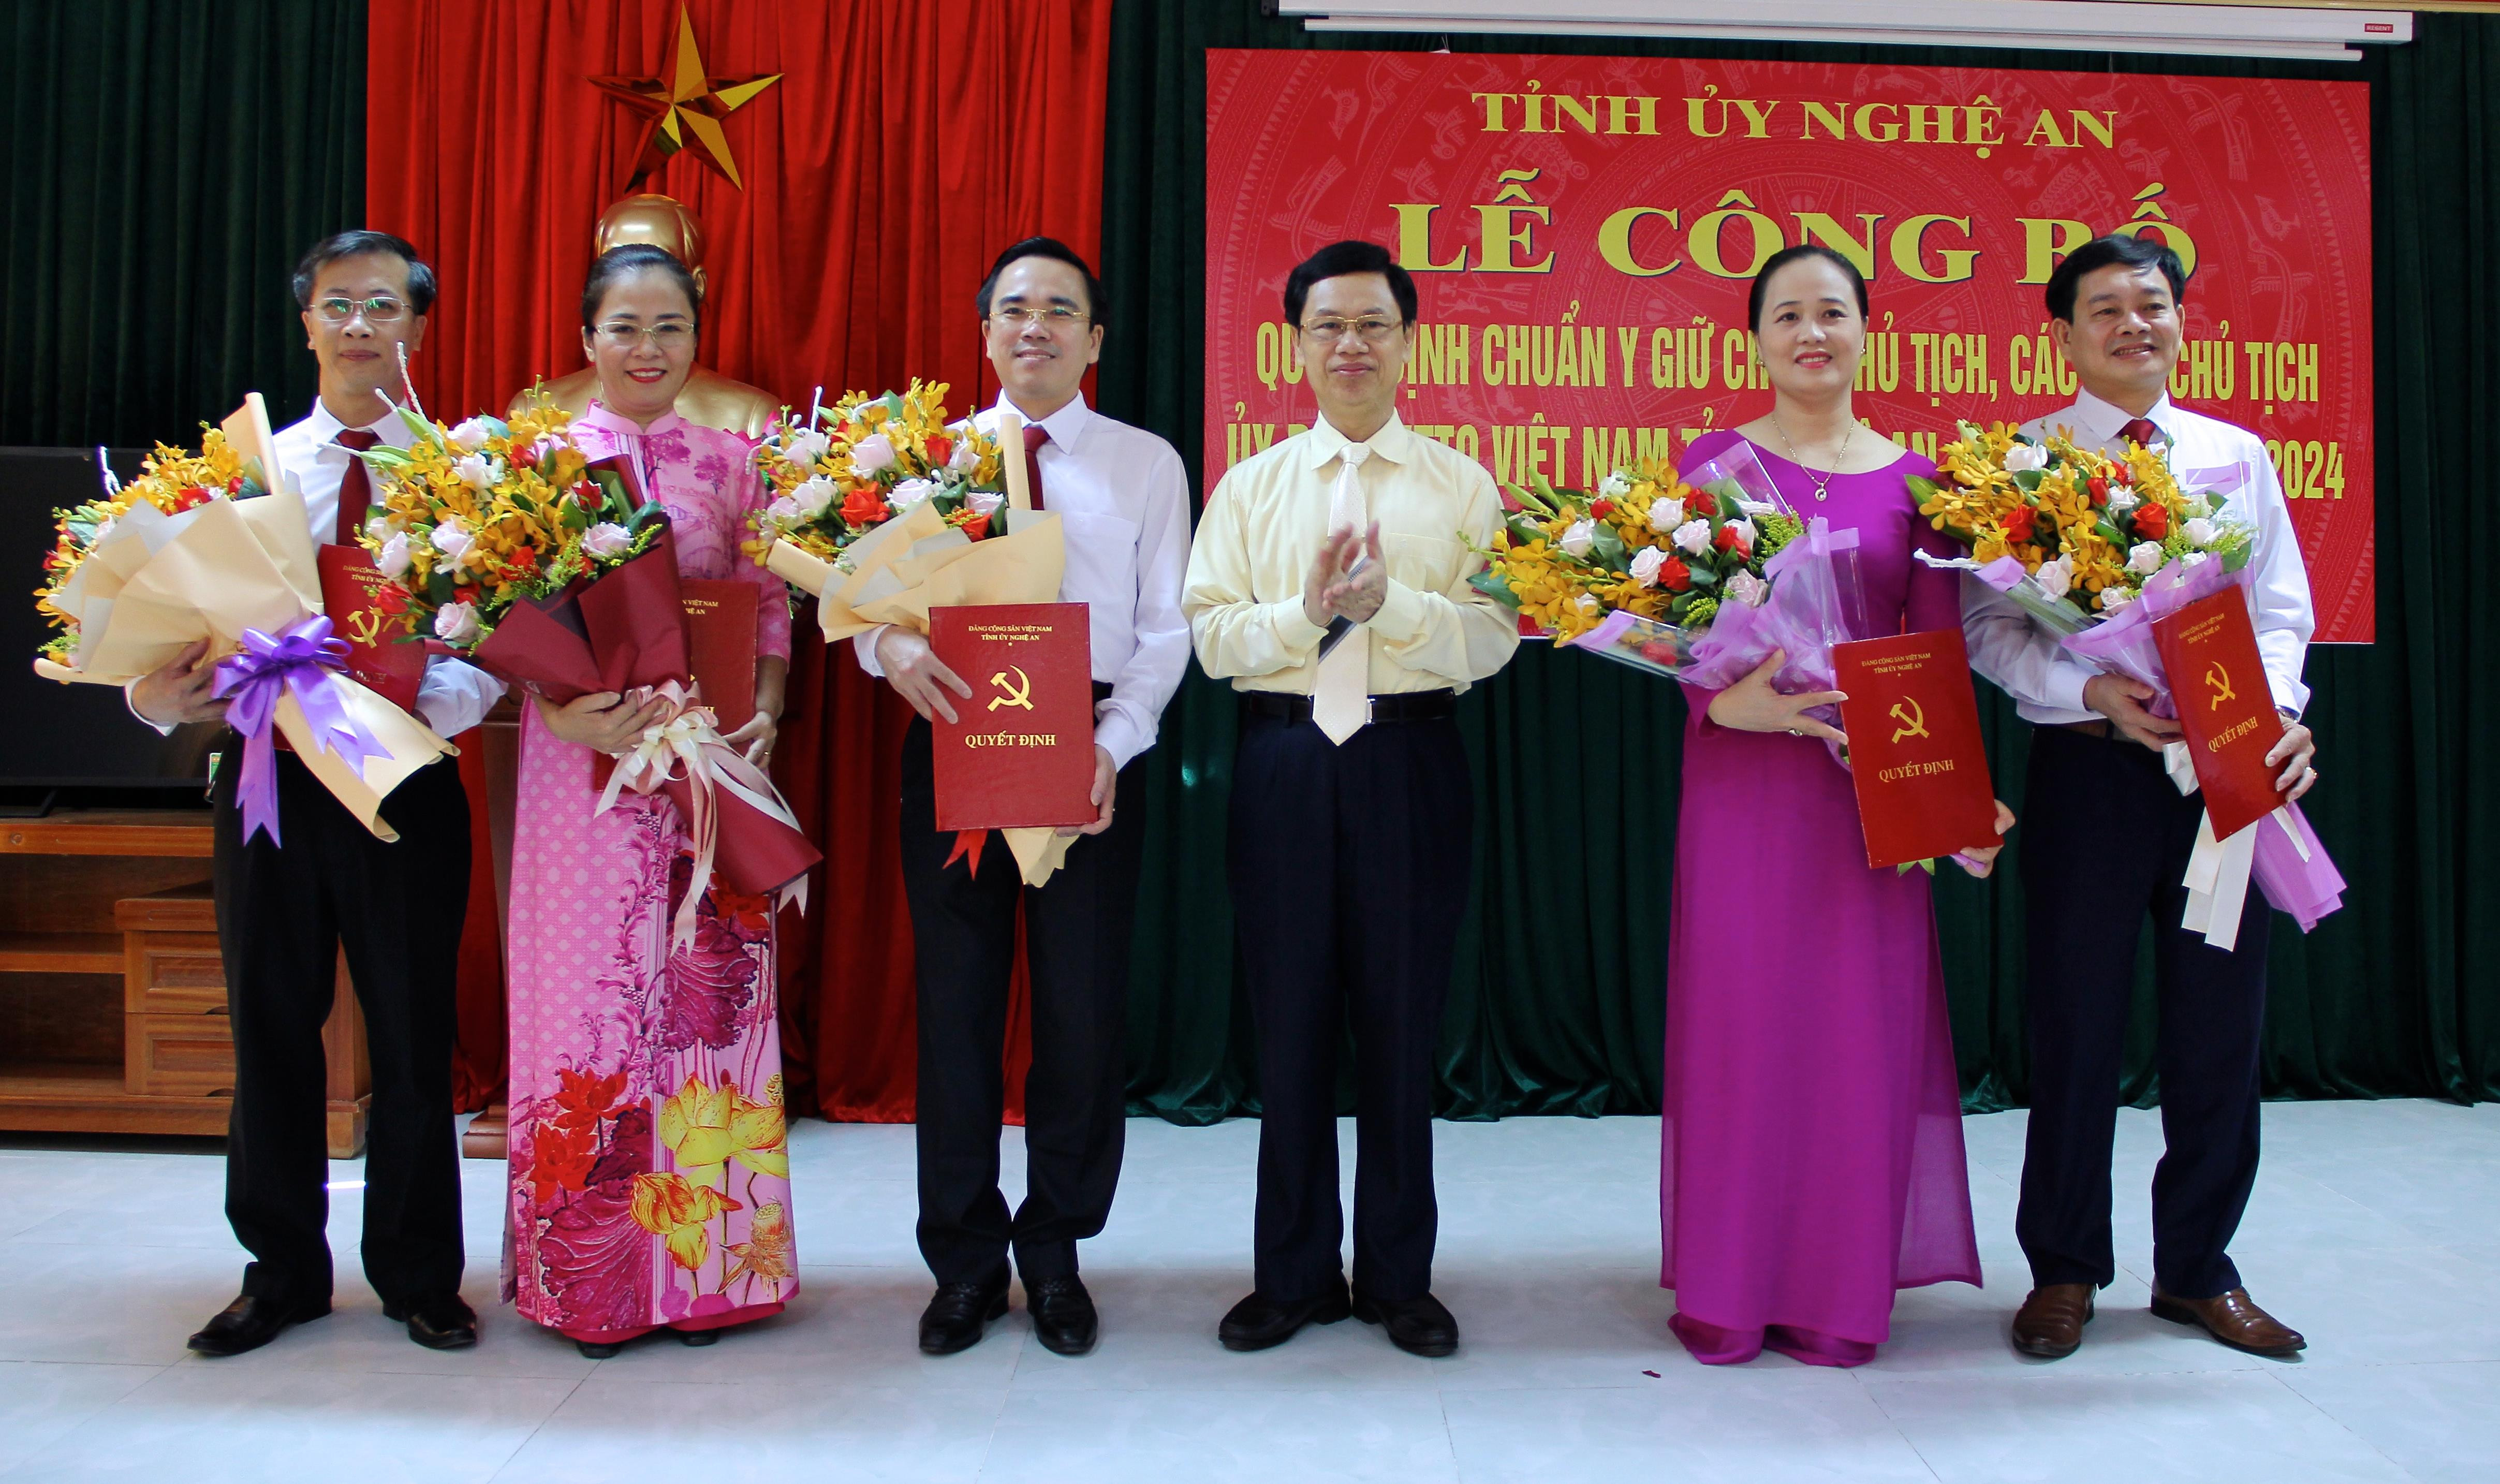 Phó Bí thư thường trực Tỉnh ủy Nguyễn Xuân Sơn trao quyết định chuẩn y các chức danh trong Ban thường trực Ủy ban MTTQ tỉnh Nghệ An. Ảnh: Mỹ Nga 